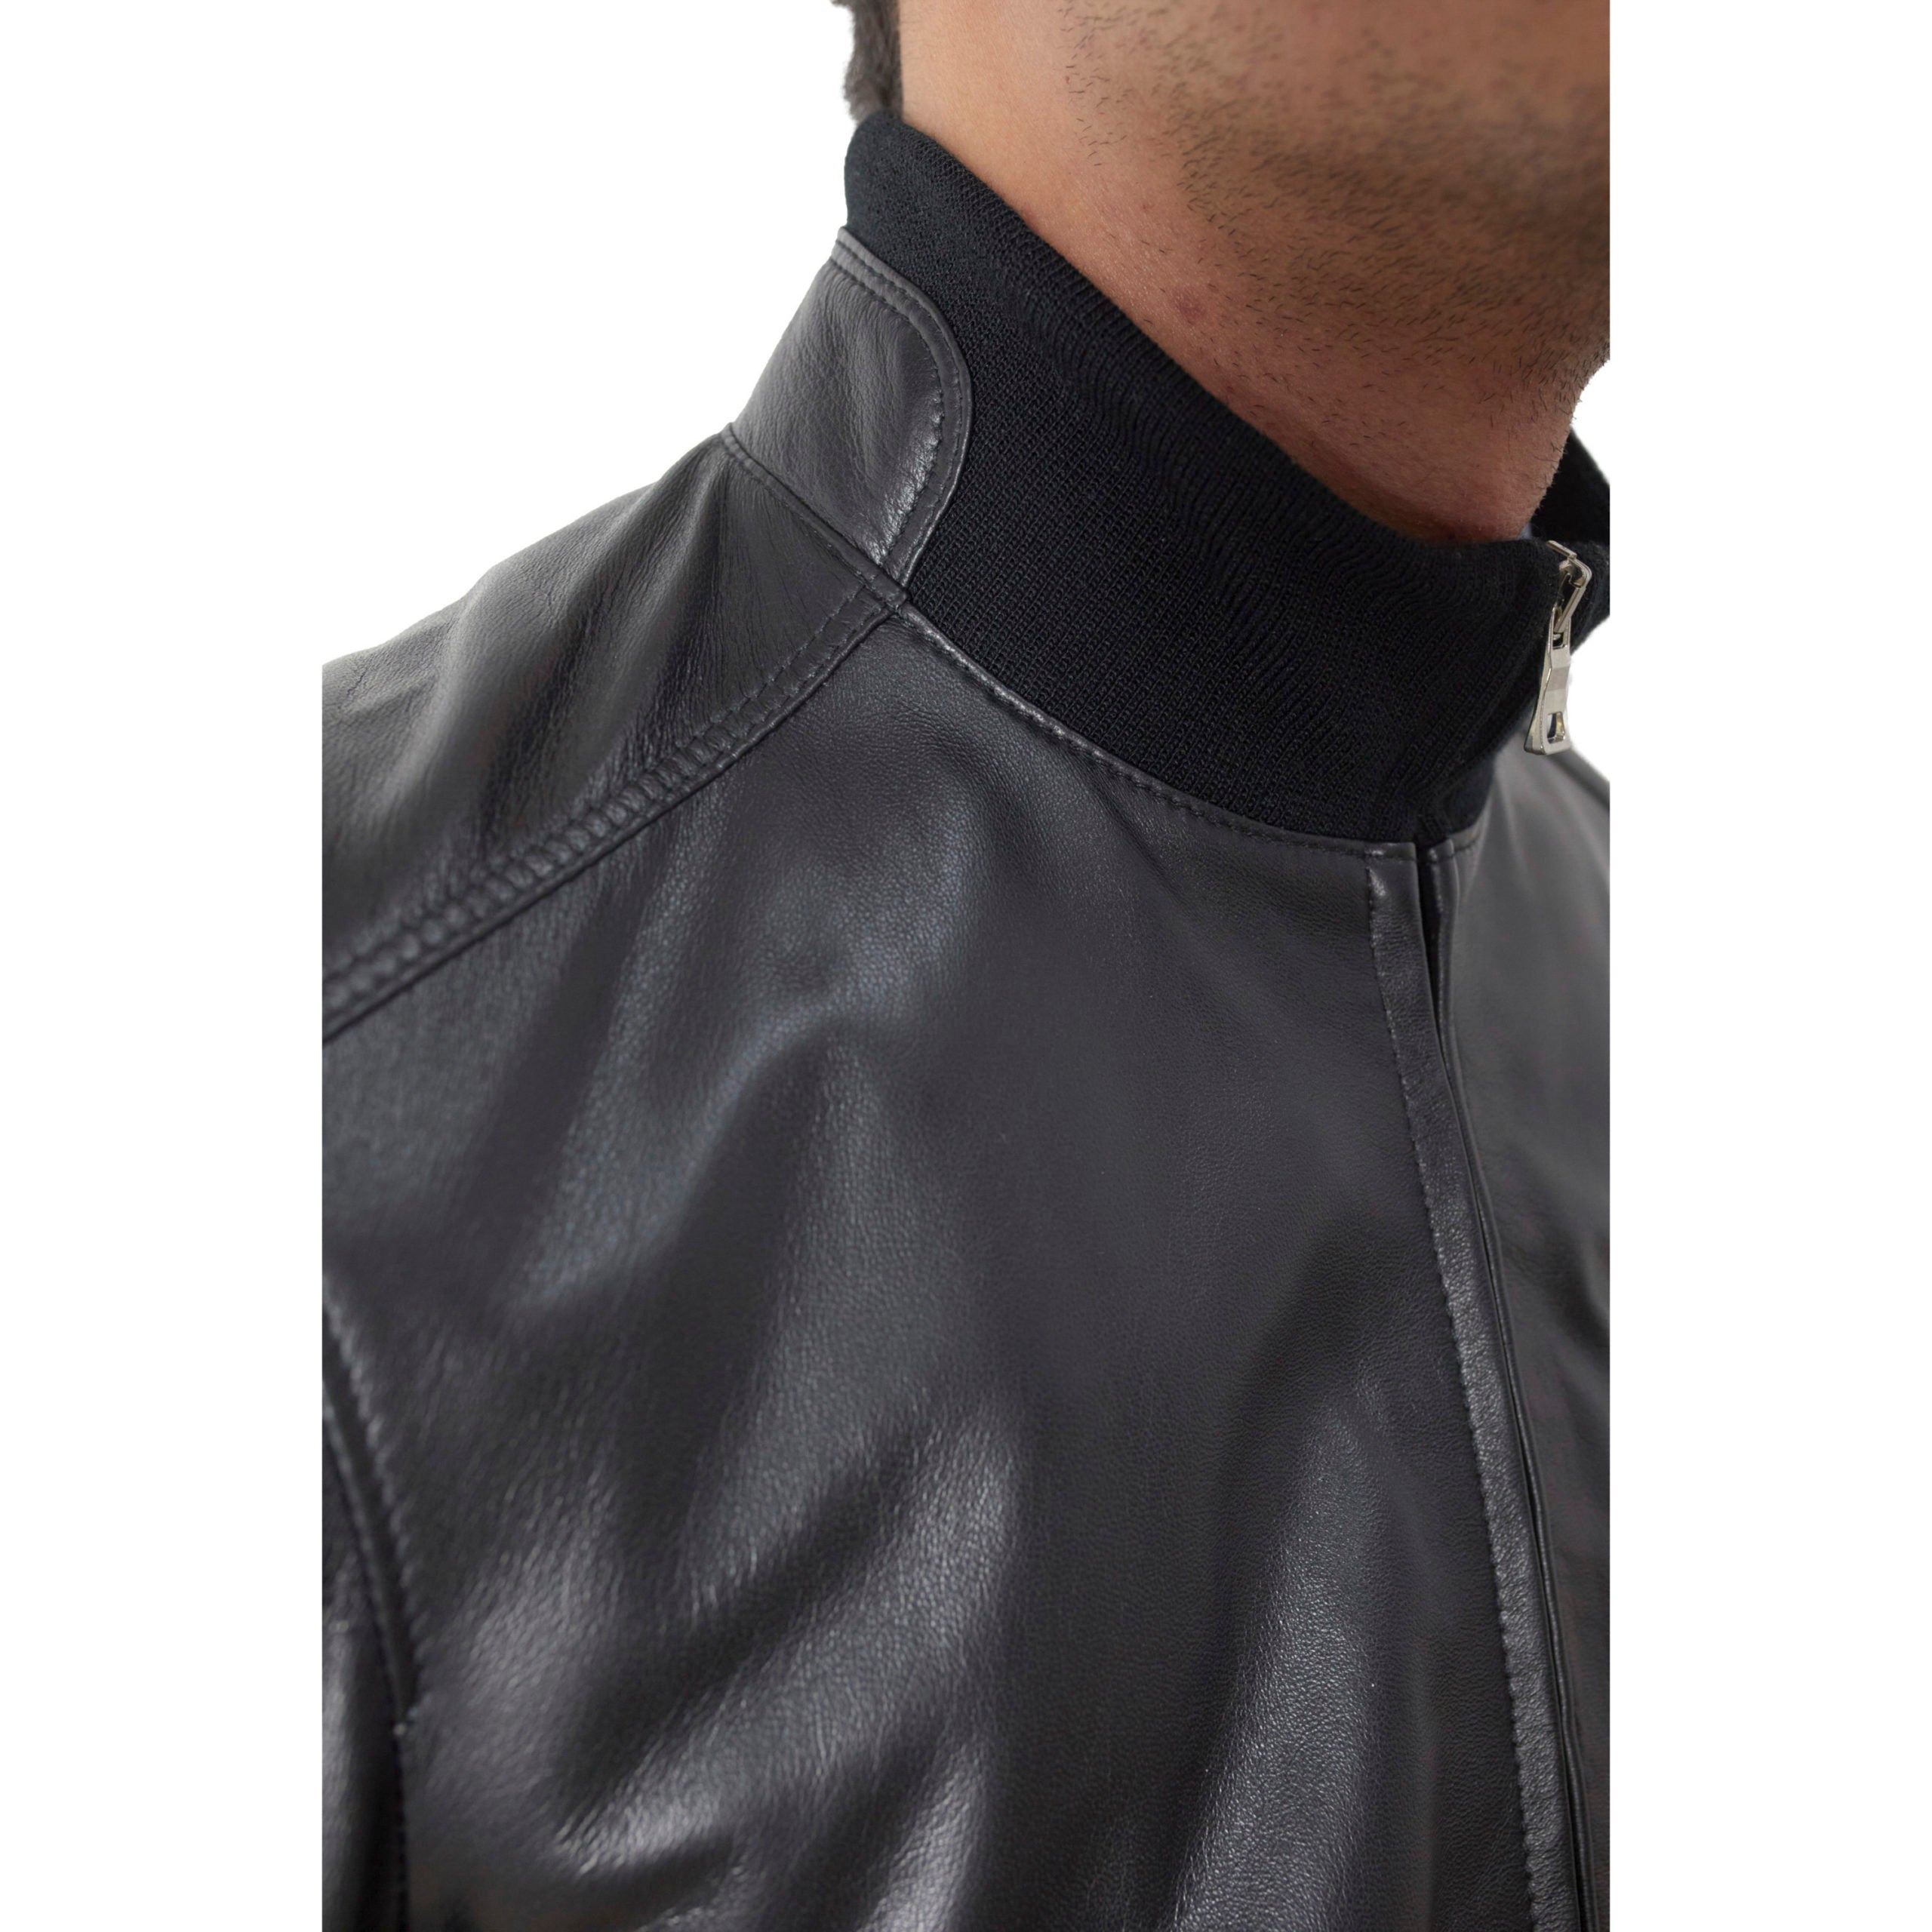 69PNANE leather jacket